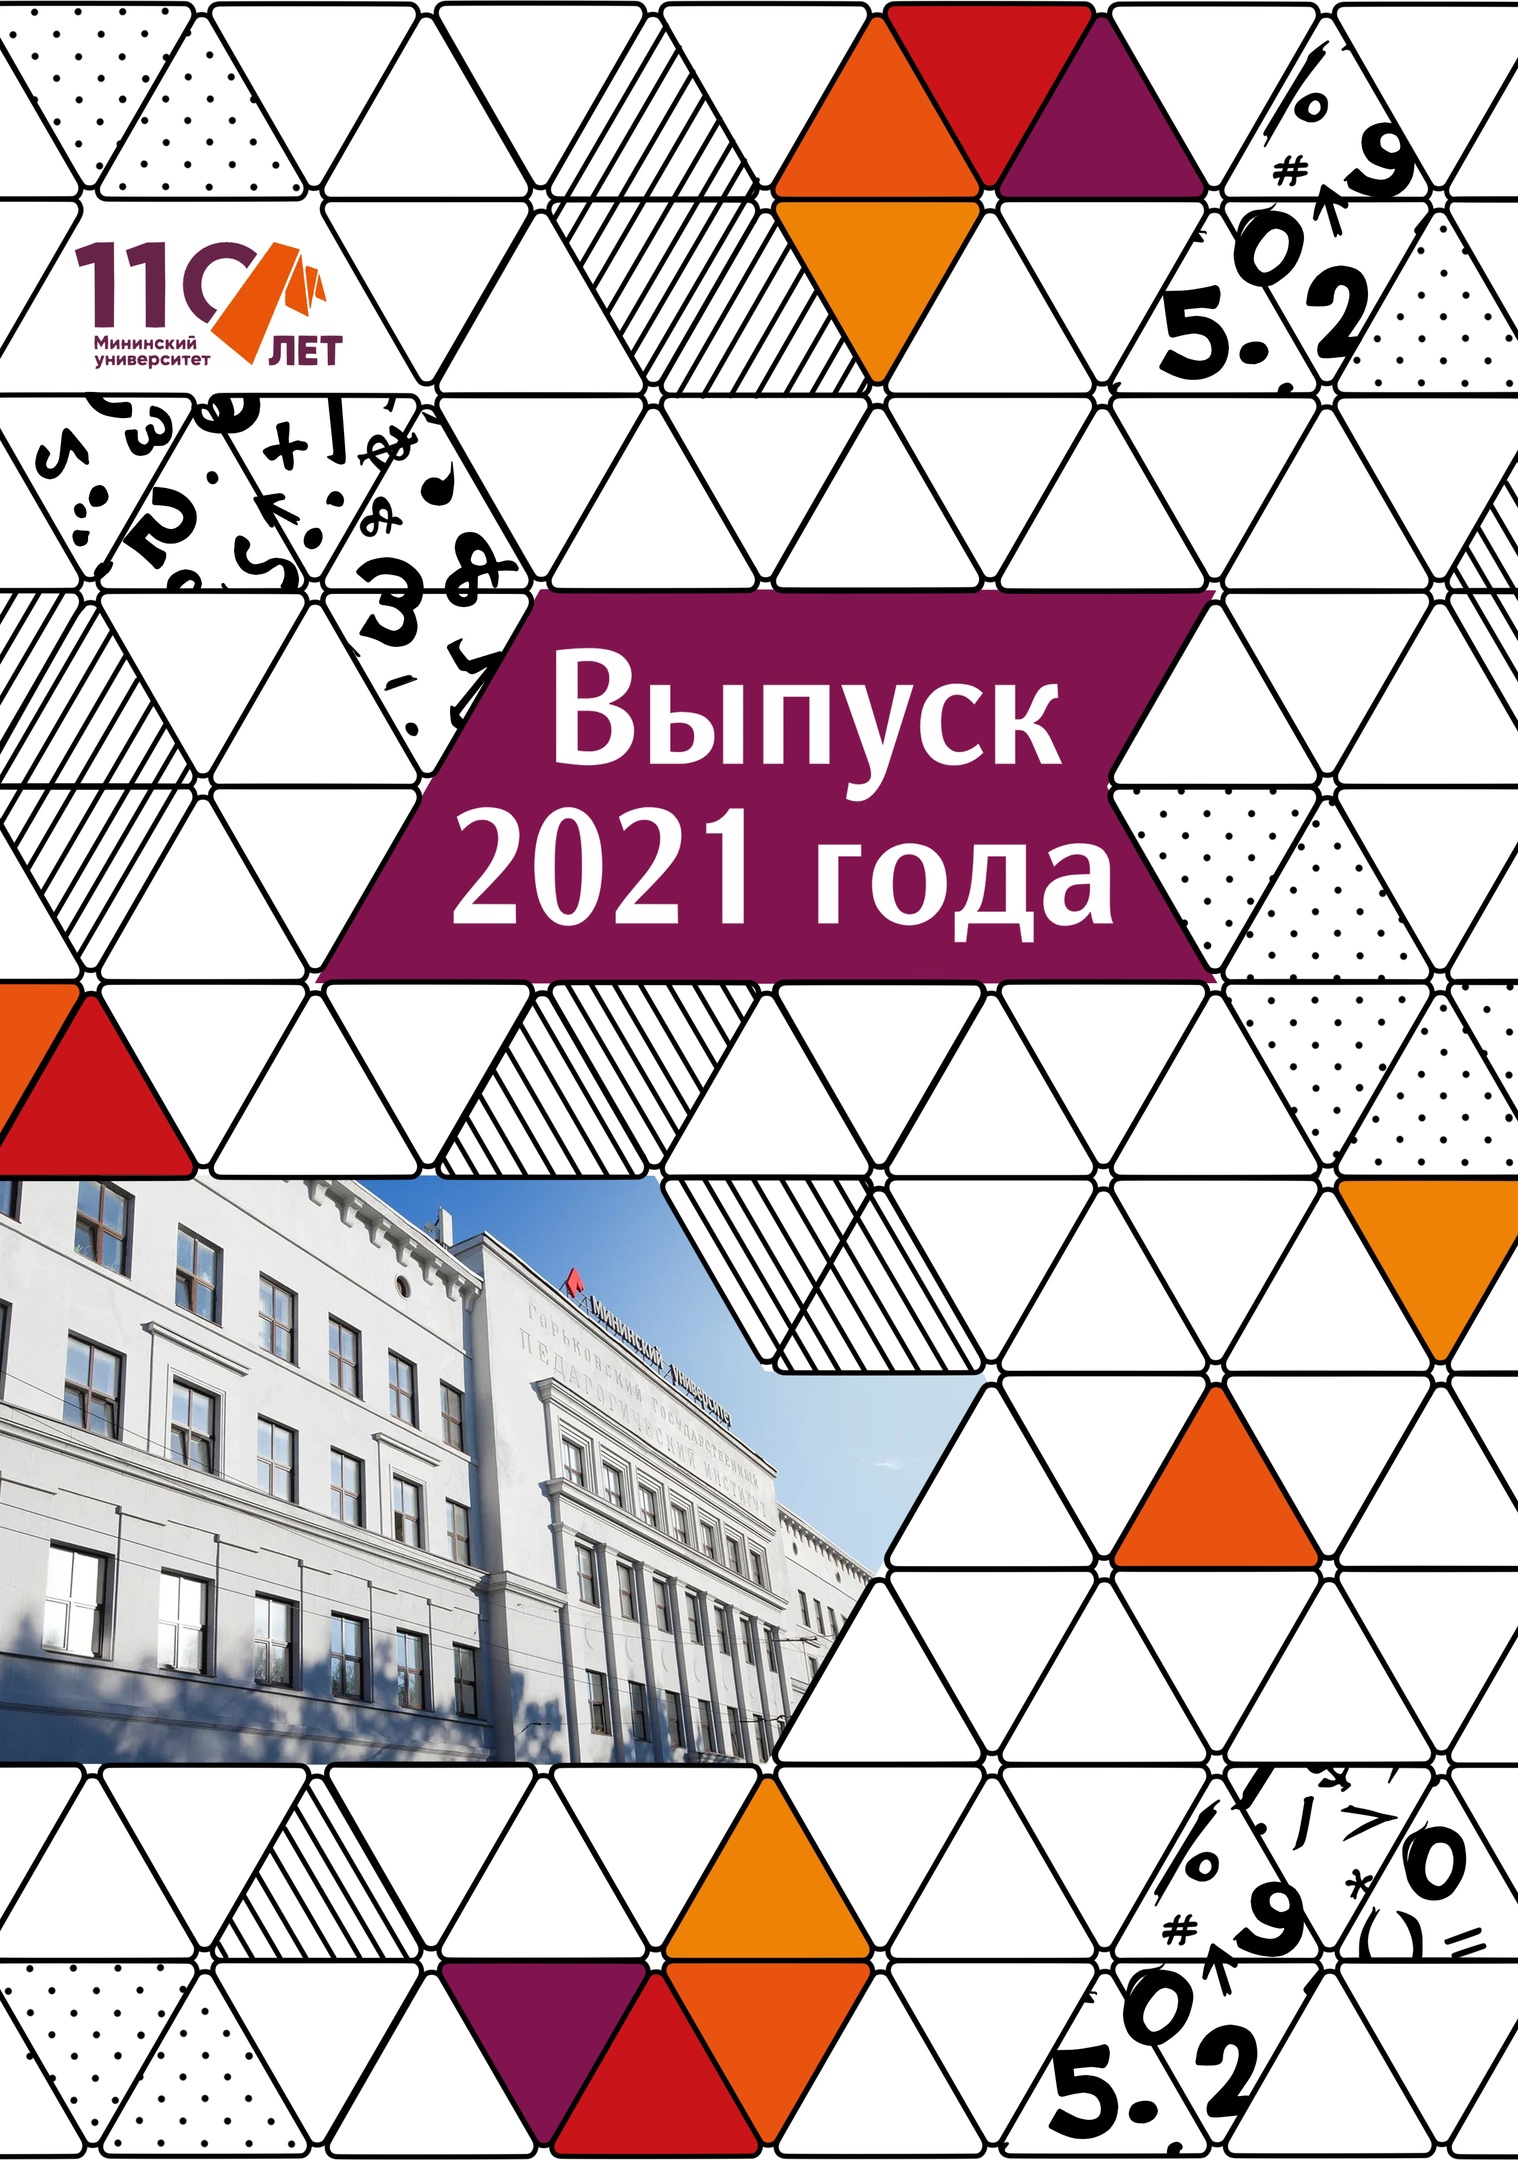 Мининский университет подготовил специальный выпускной онлайн-альбом 2021